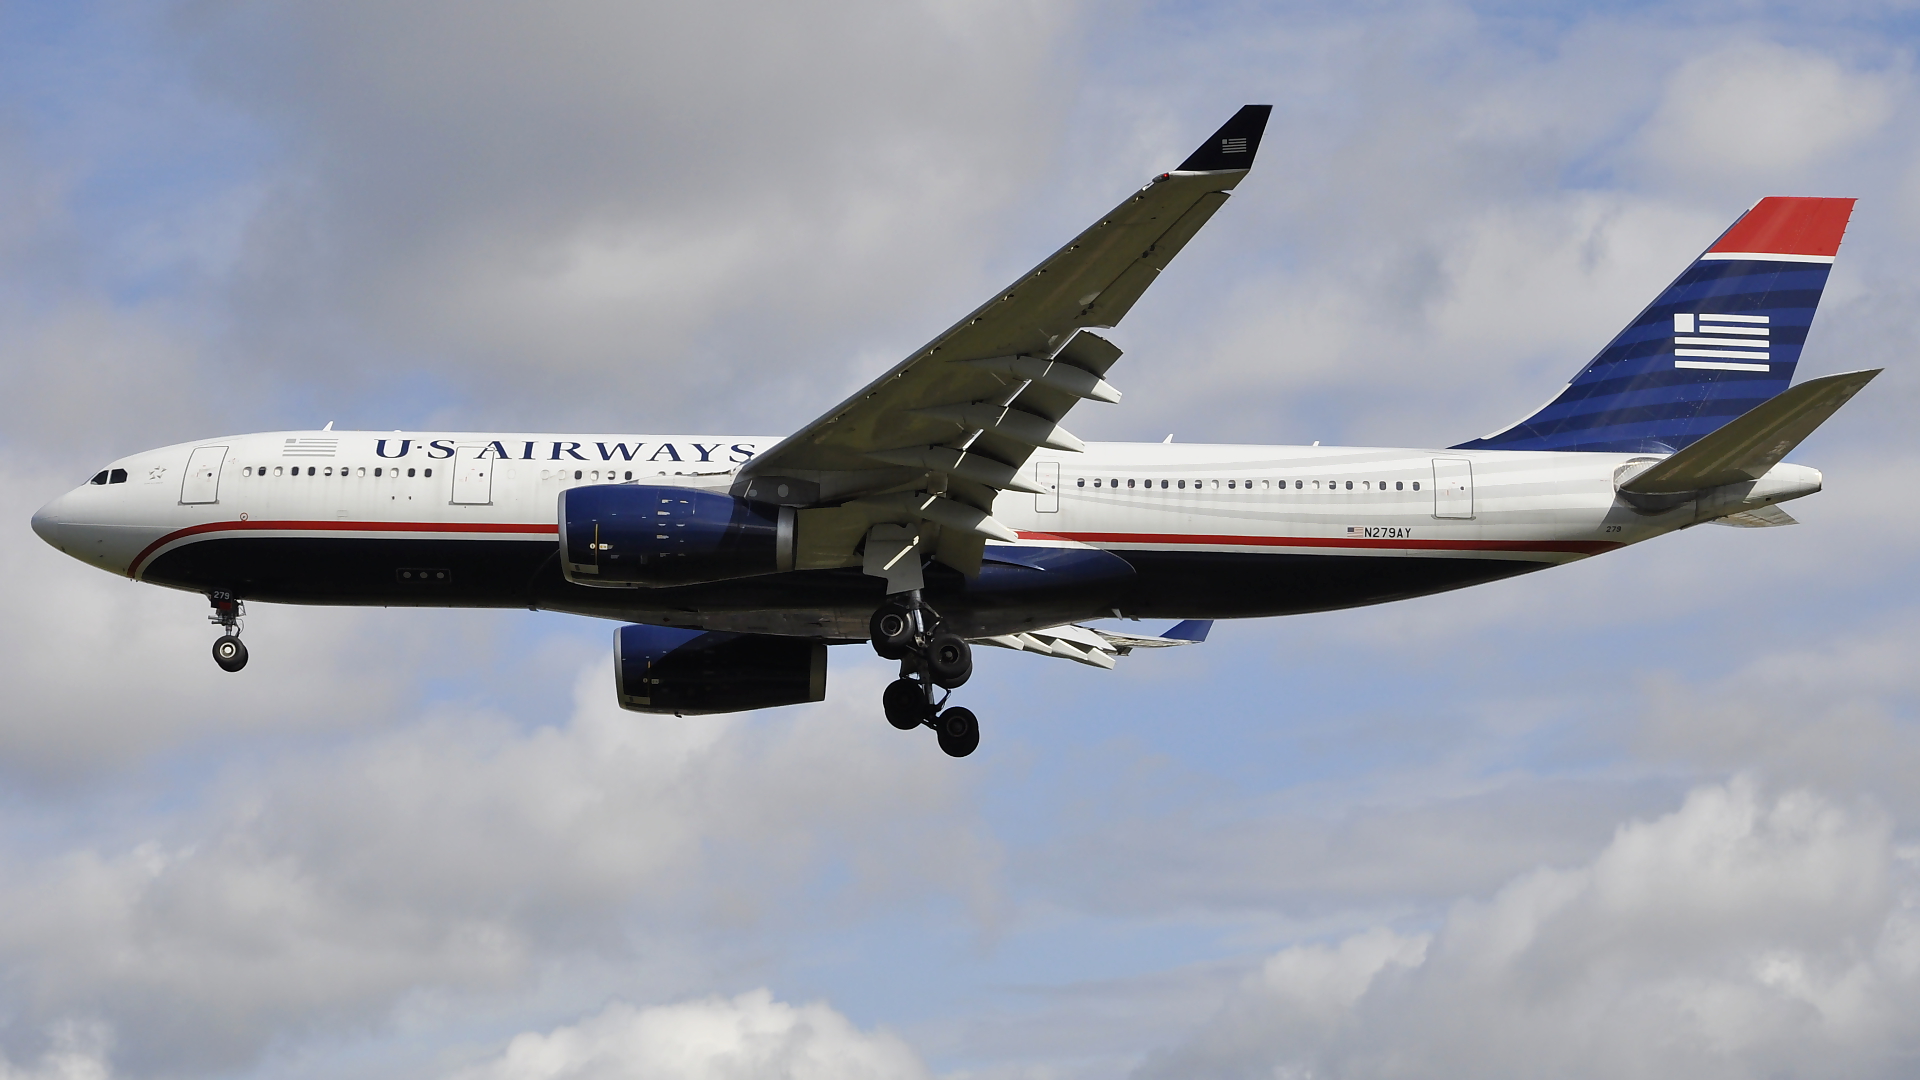 N279AY ✈ US Airways Airbus 330-243 @ London-Heathrow